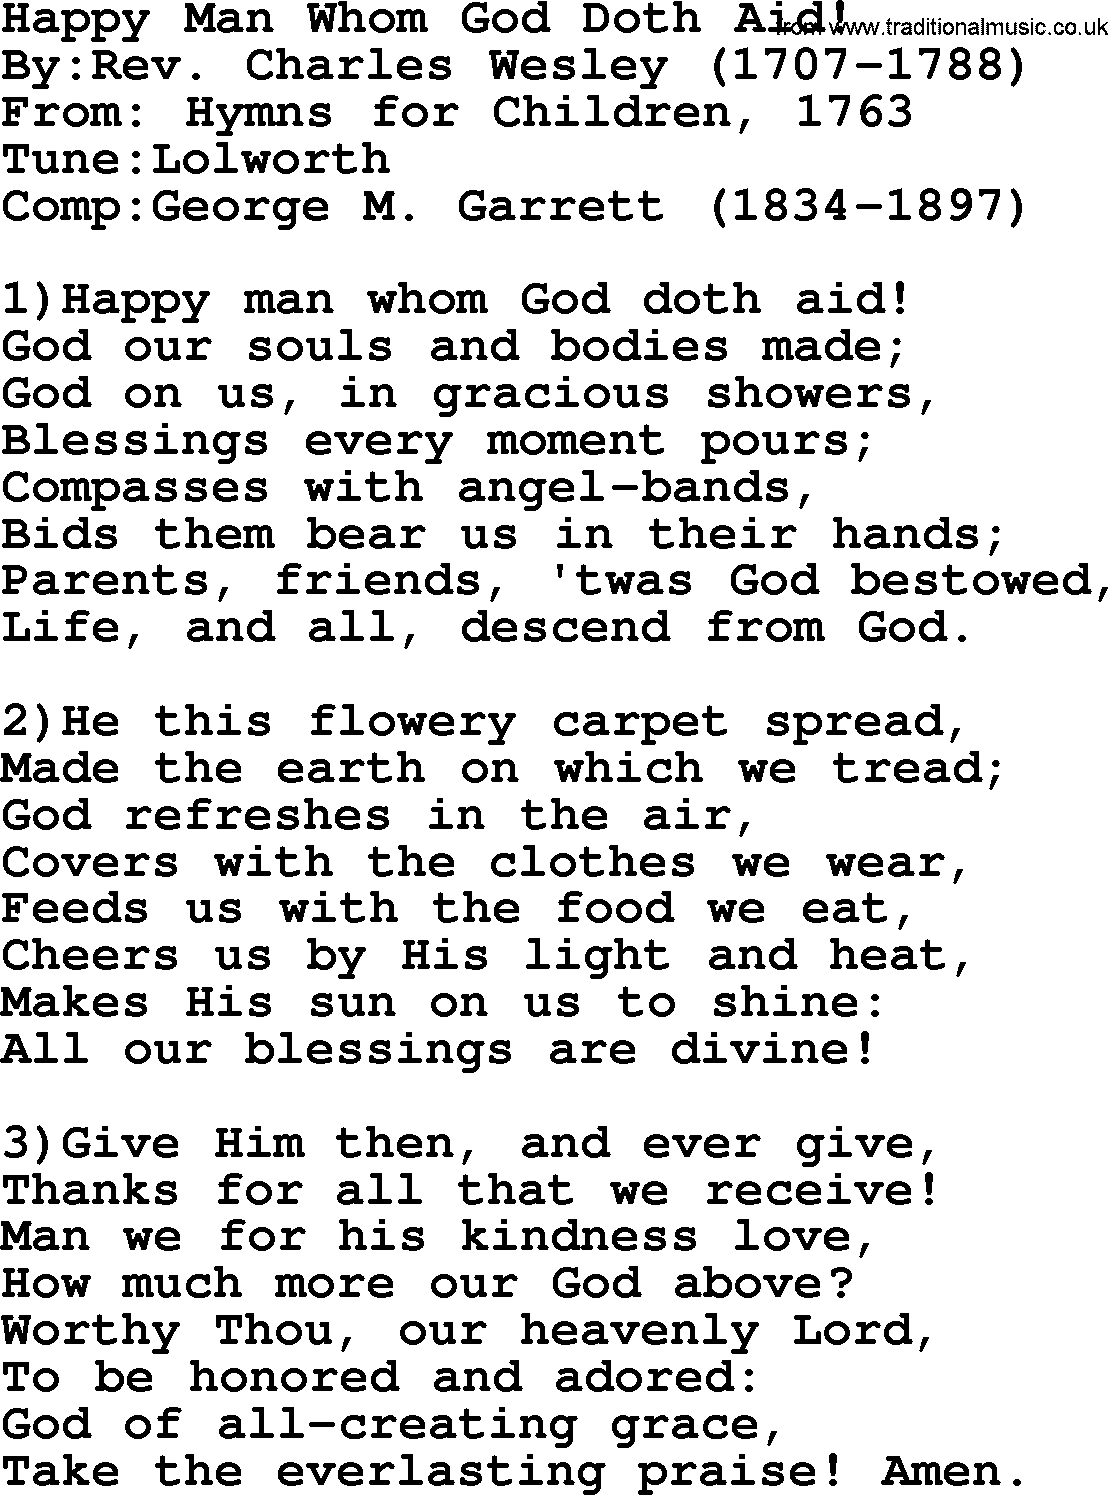 Methodist Hymn: Happy Man Whom God Doth Aid!, lyrics